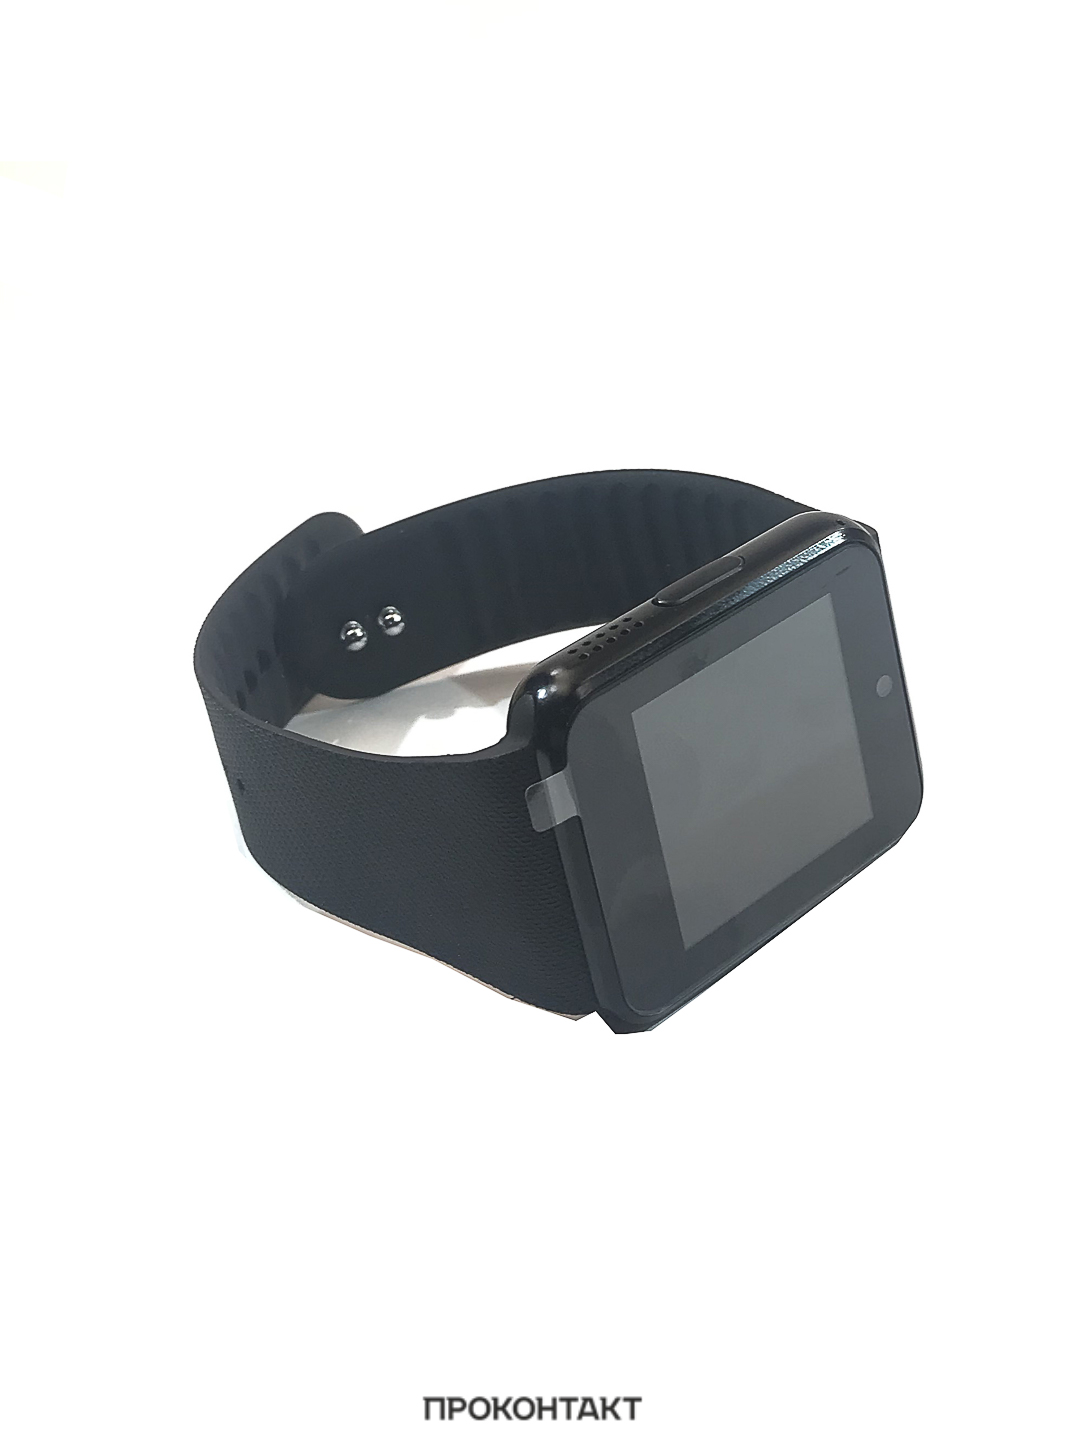 Купить Часы Smart EZRA SW06 в Челябинске